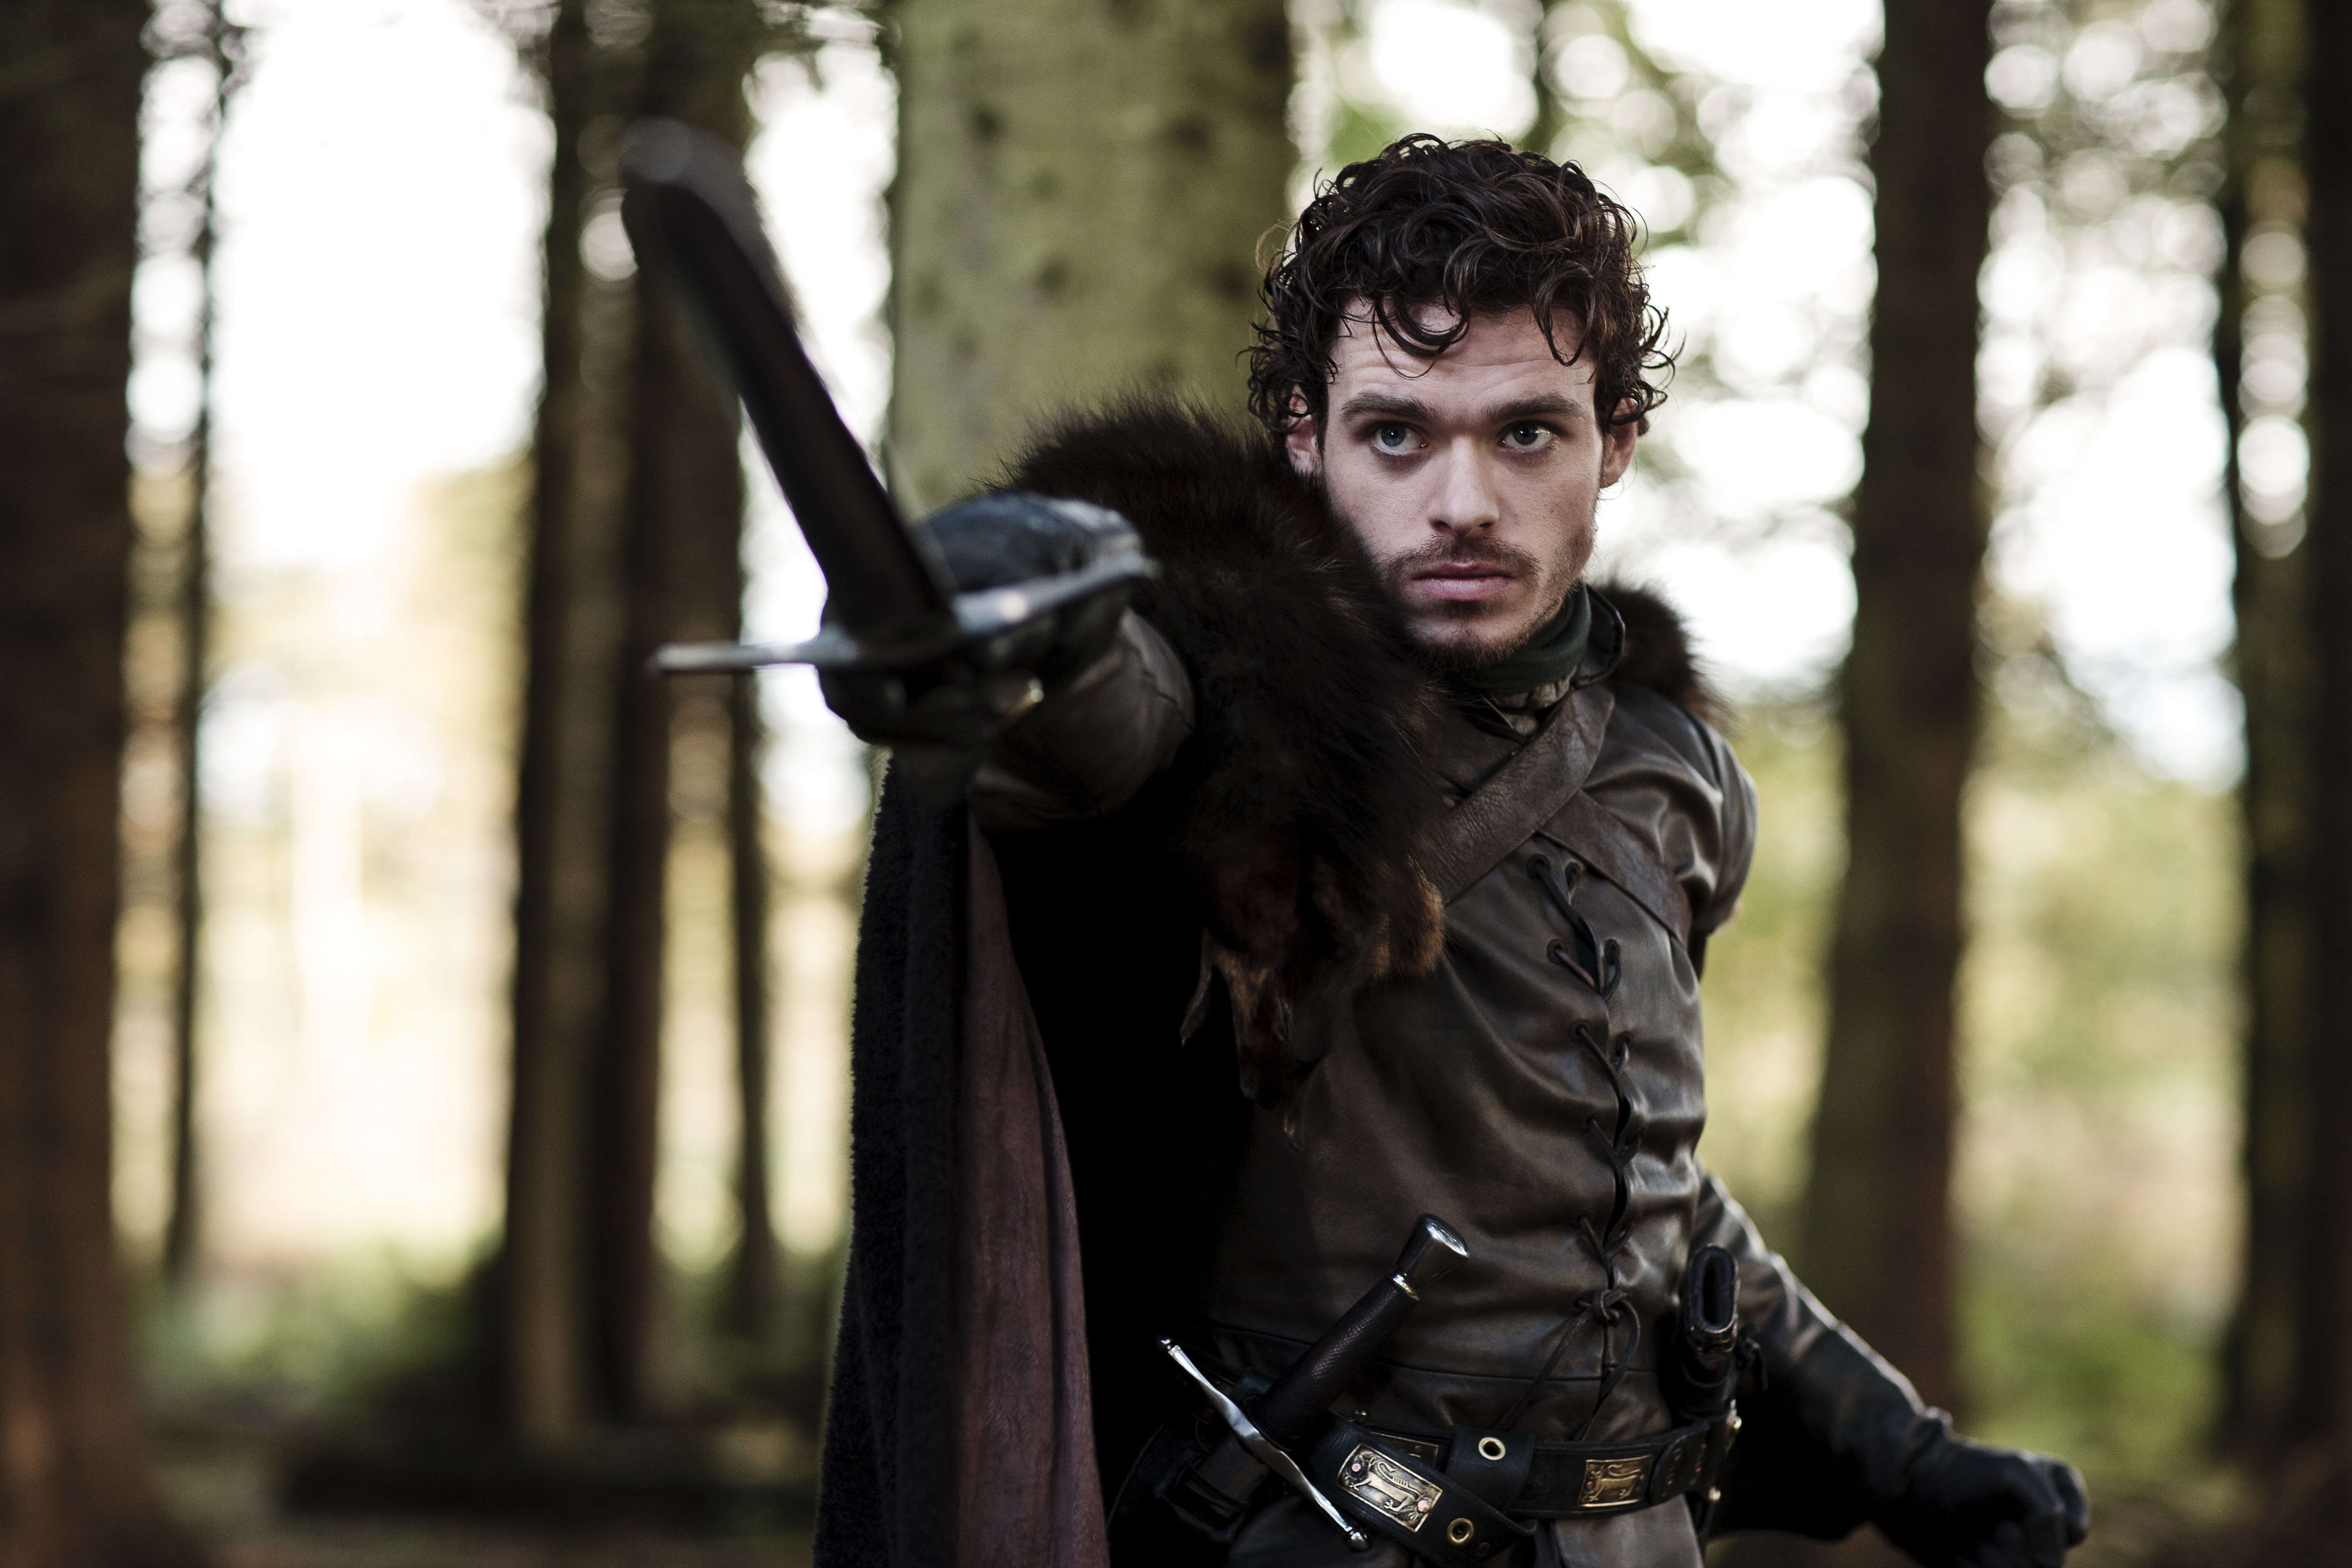 Game of Thrones, TV series, Robb Stark, swords, House Stark, Richard Madden - desktop wallpaper